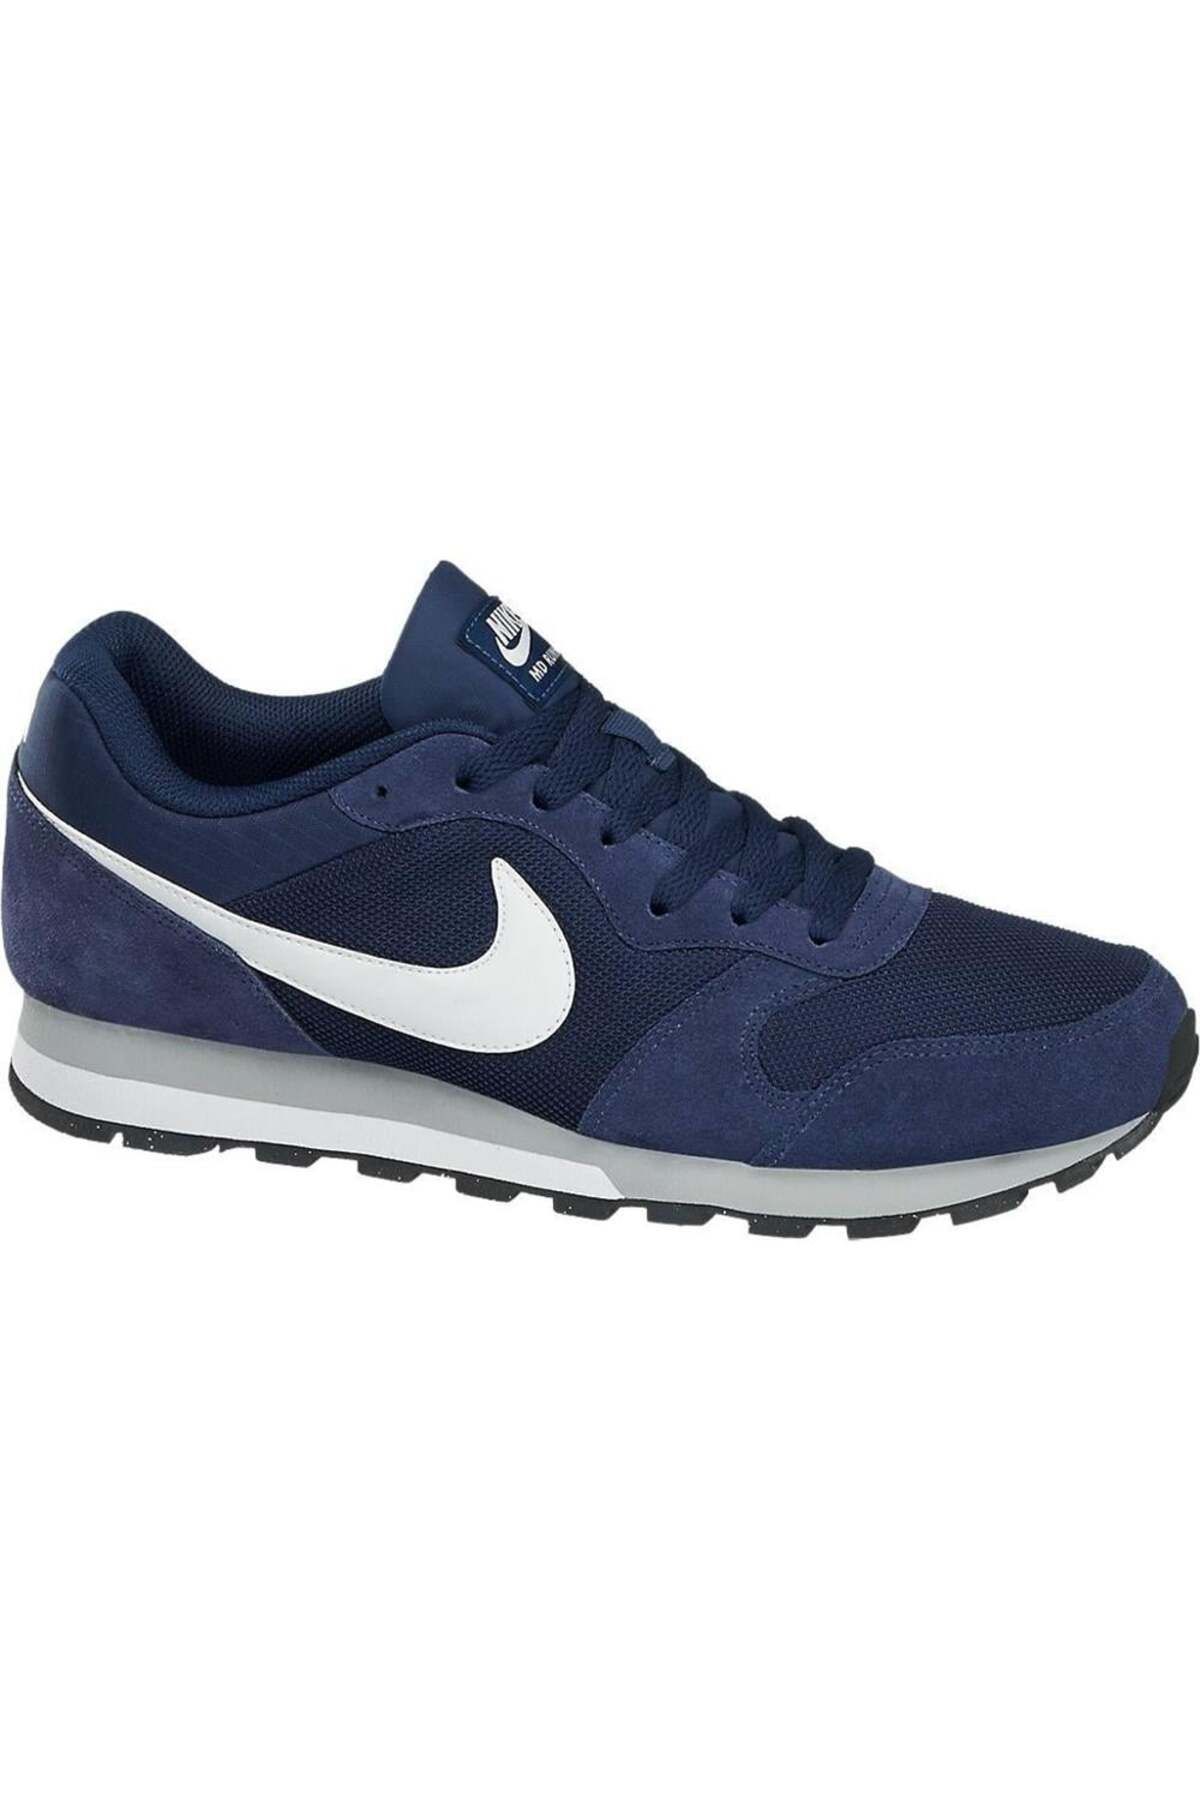 Nike 749794-410 Md Runner Günlük Spor Ayakkabı